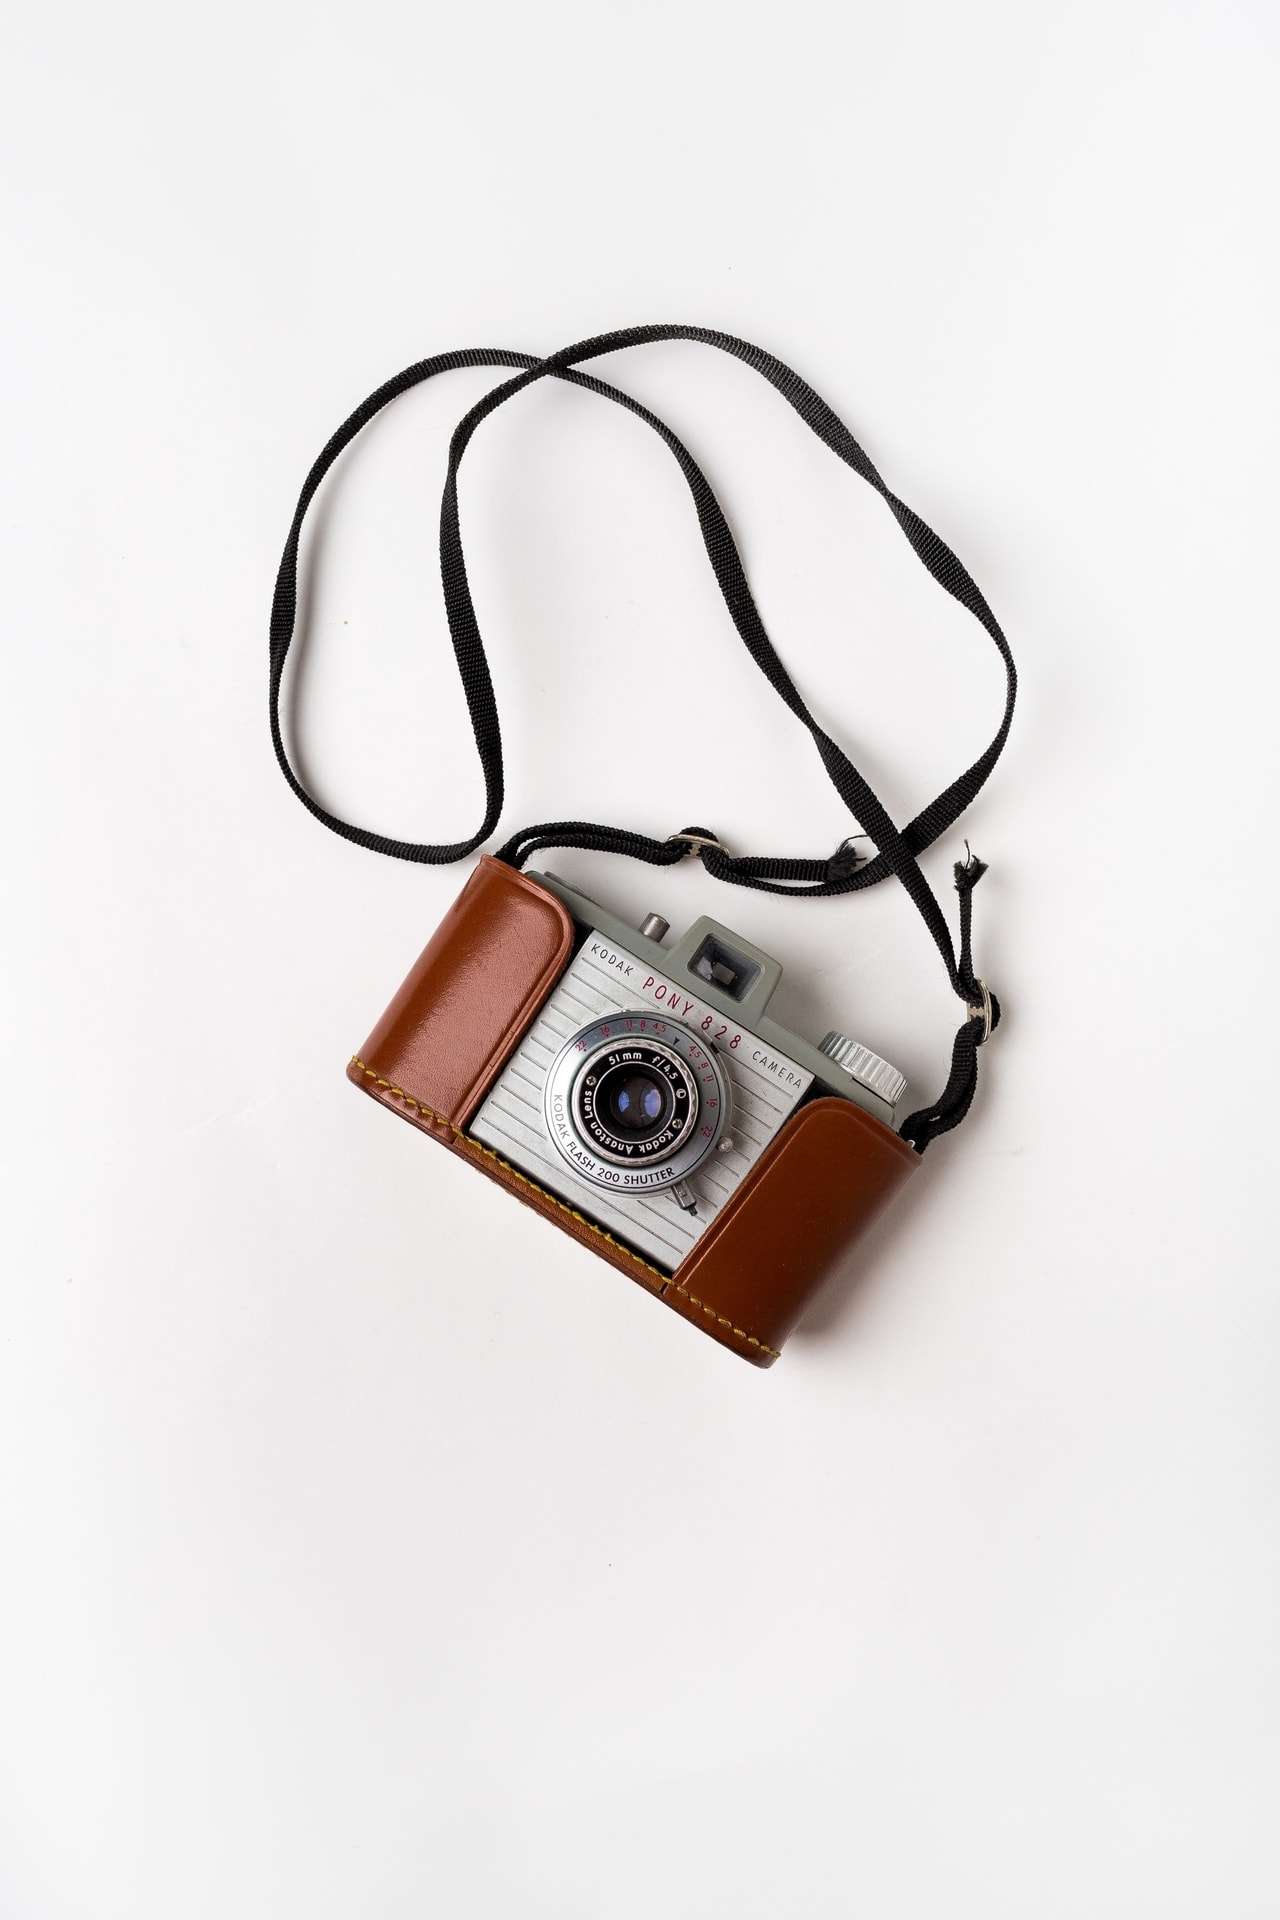 Appareil photo vintage Kodak avec étui et sangle en cuir